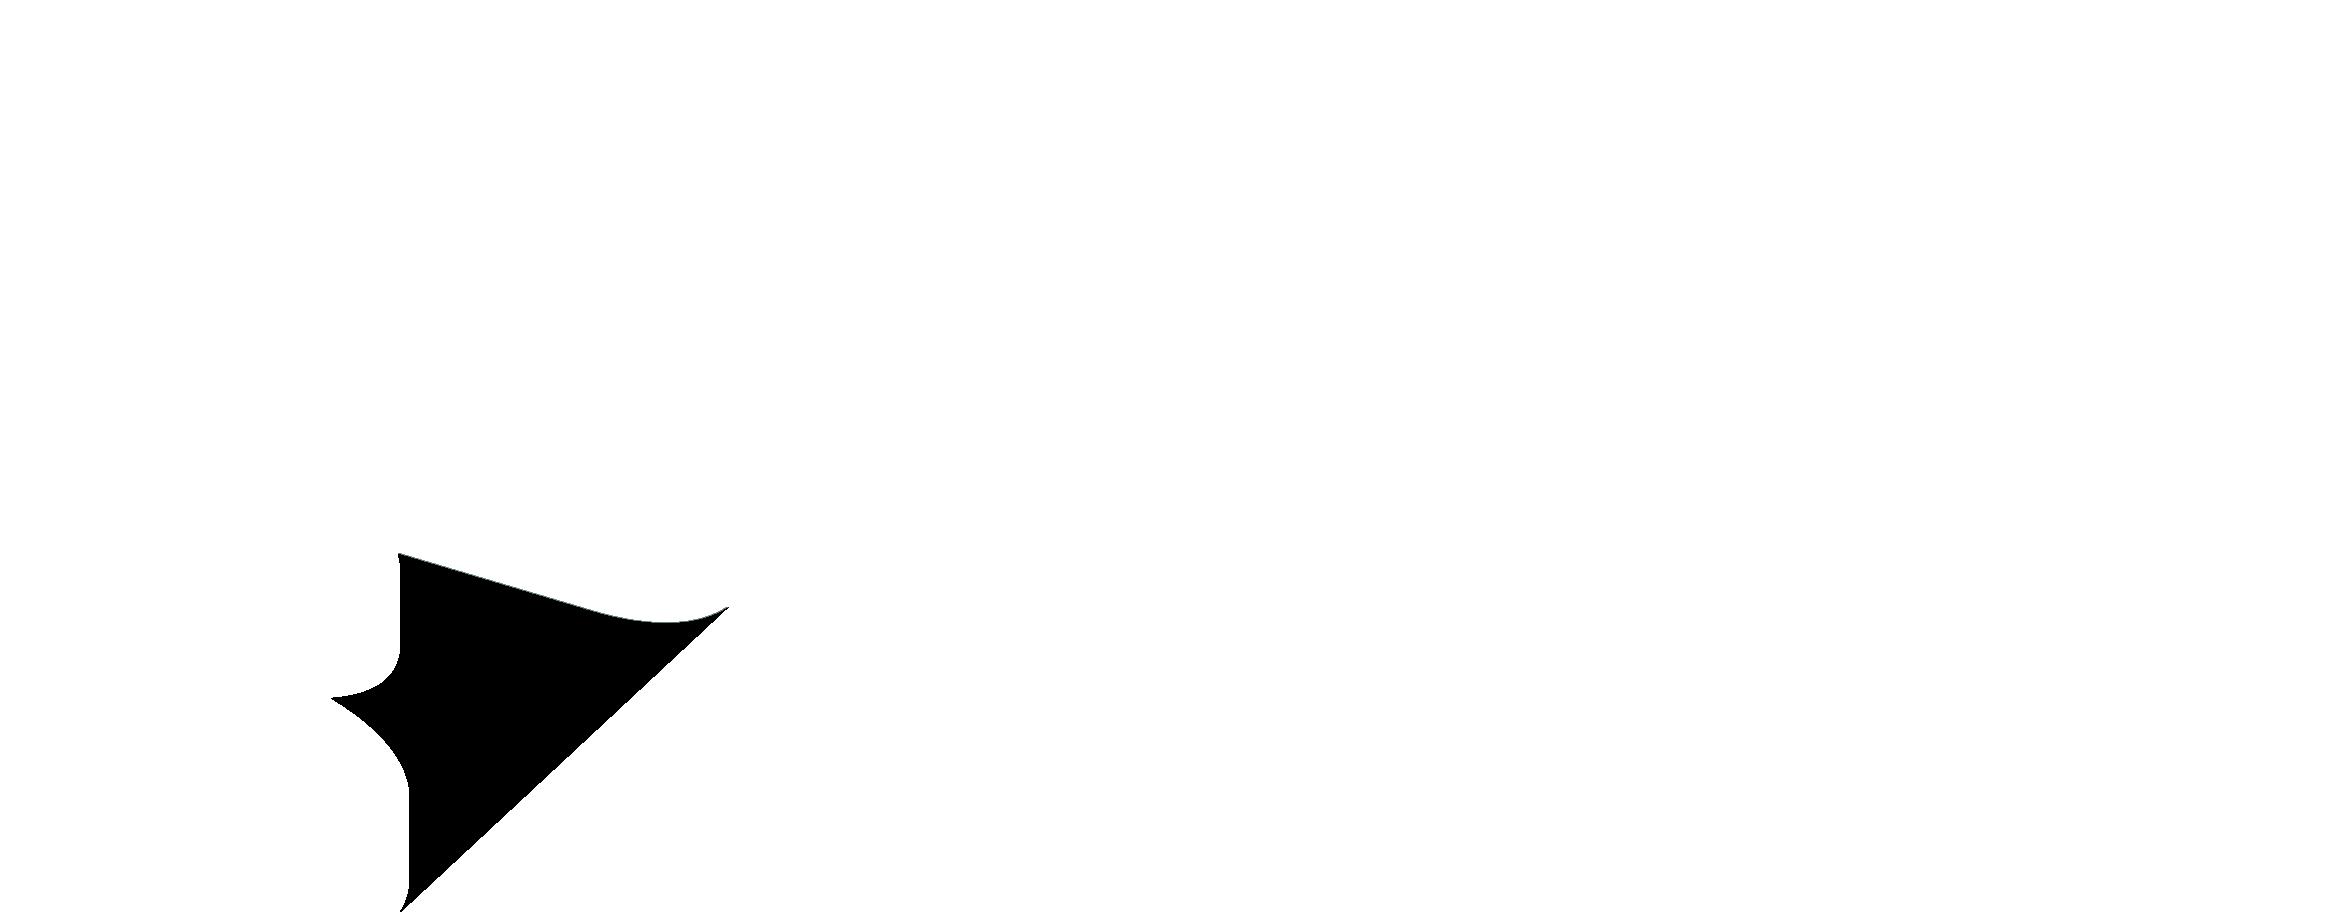 Bestrentgroup logo